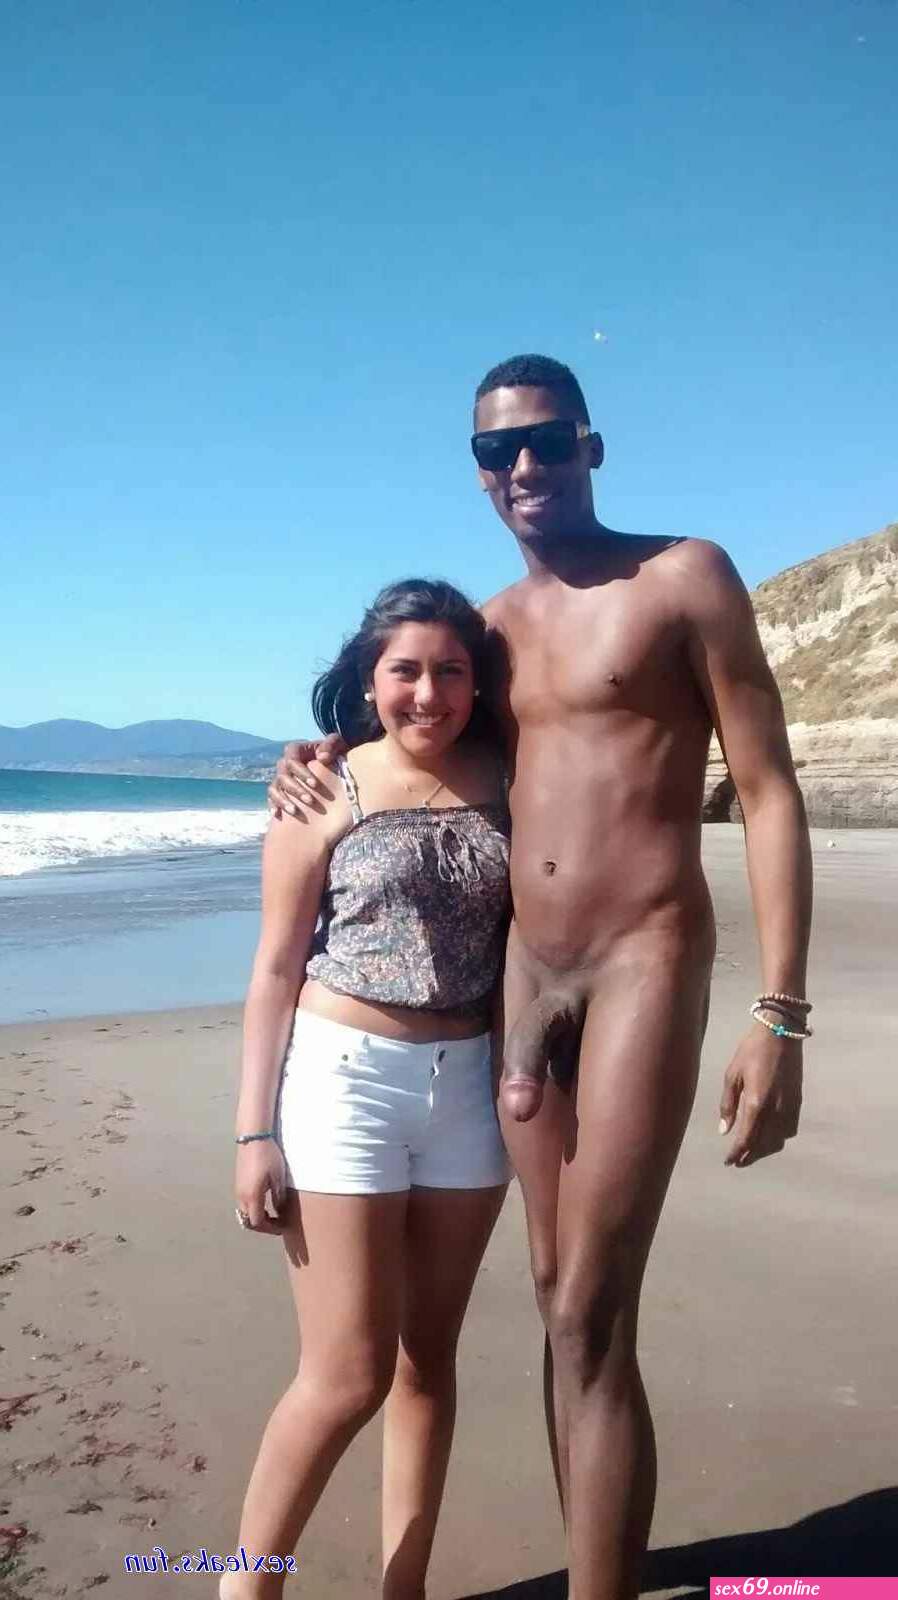 huge dicks on beach - Sexy photos